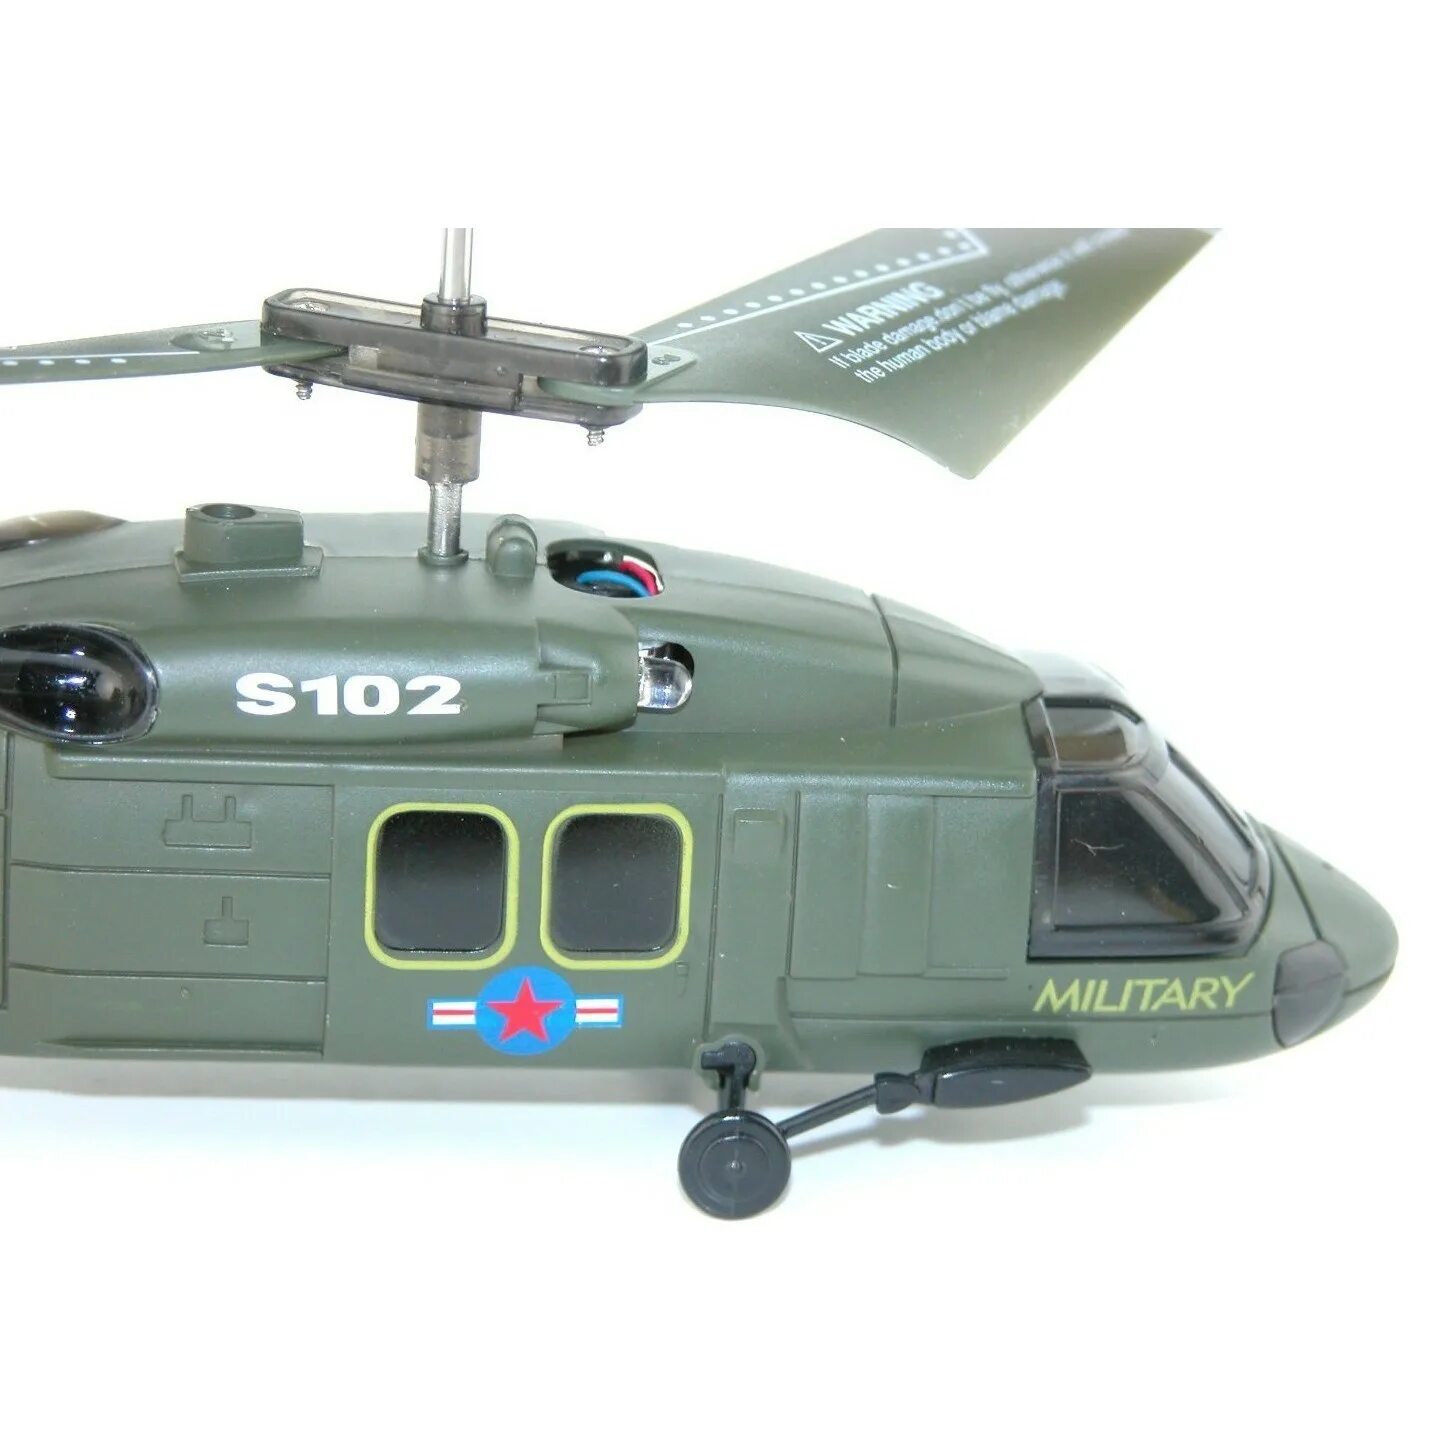 Вертолёт Syma s102g. Вертолет Syma Black Hawk uh-60 (s102g) 20 см. Вертолет Syma s109g зеленый. Радиоуправляемый вертолет Black Hawk.